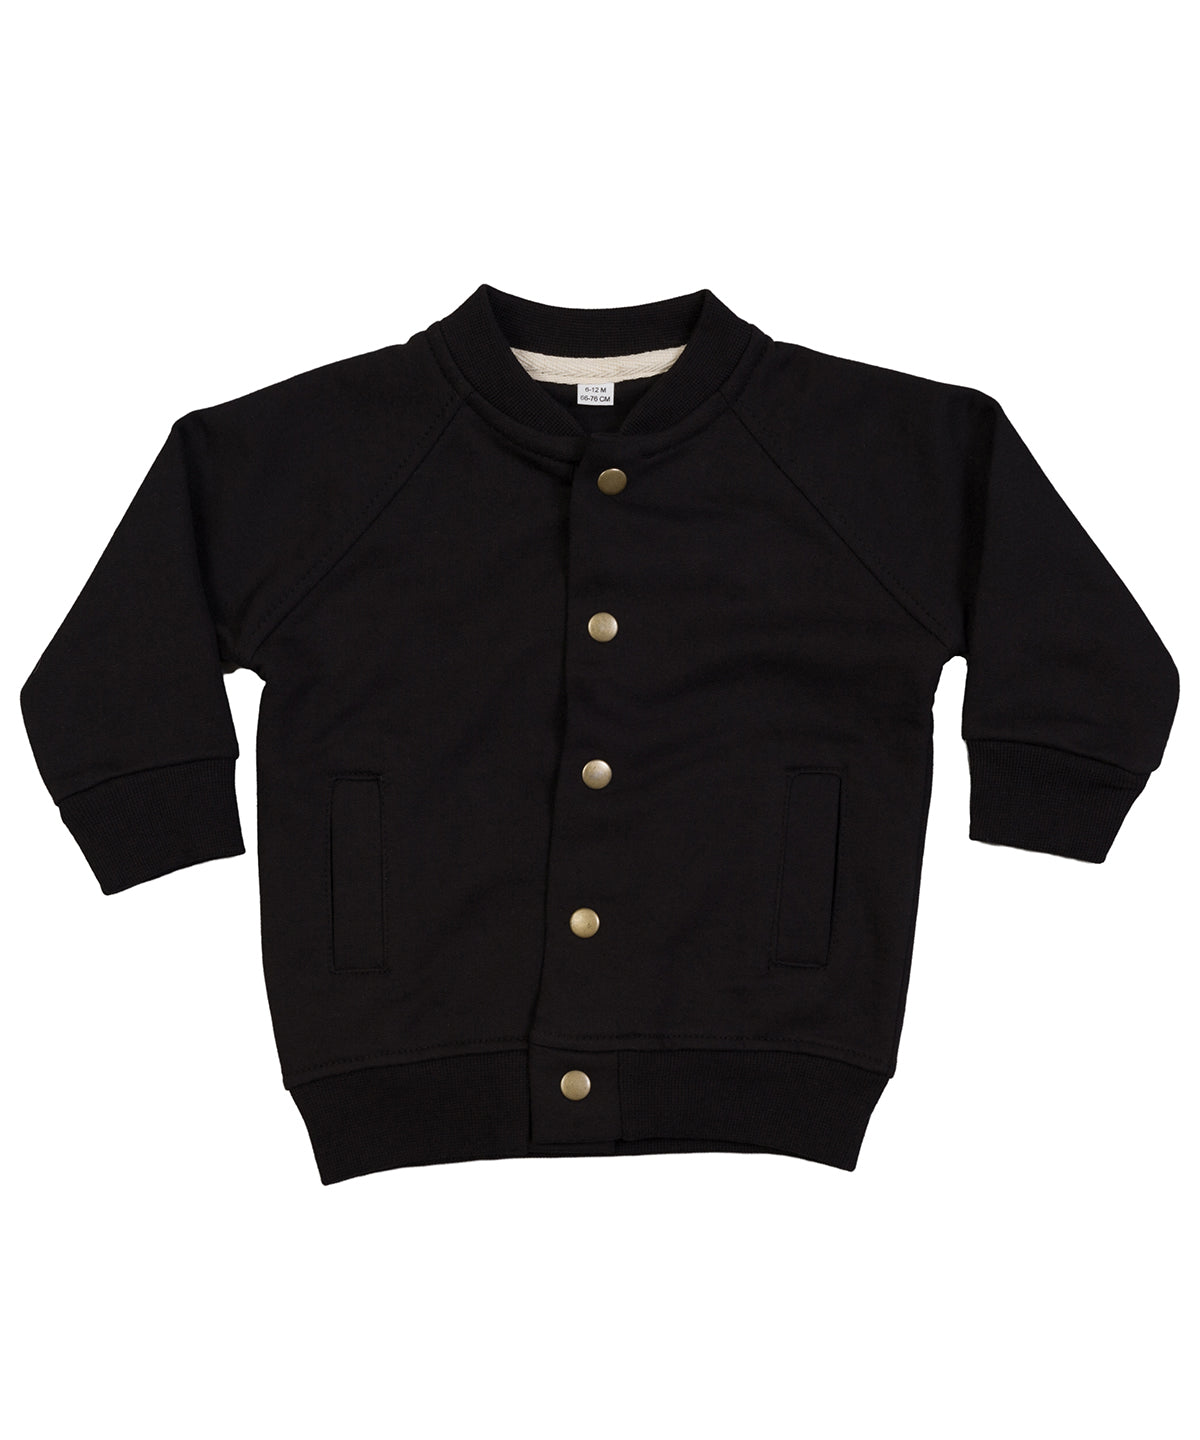 Personalised Jackets - Black Babybugz Baby bomber jacket